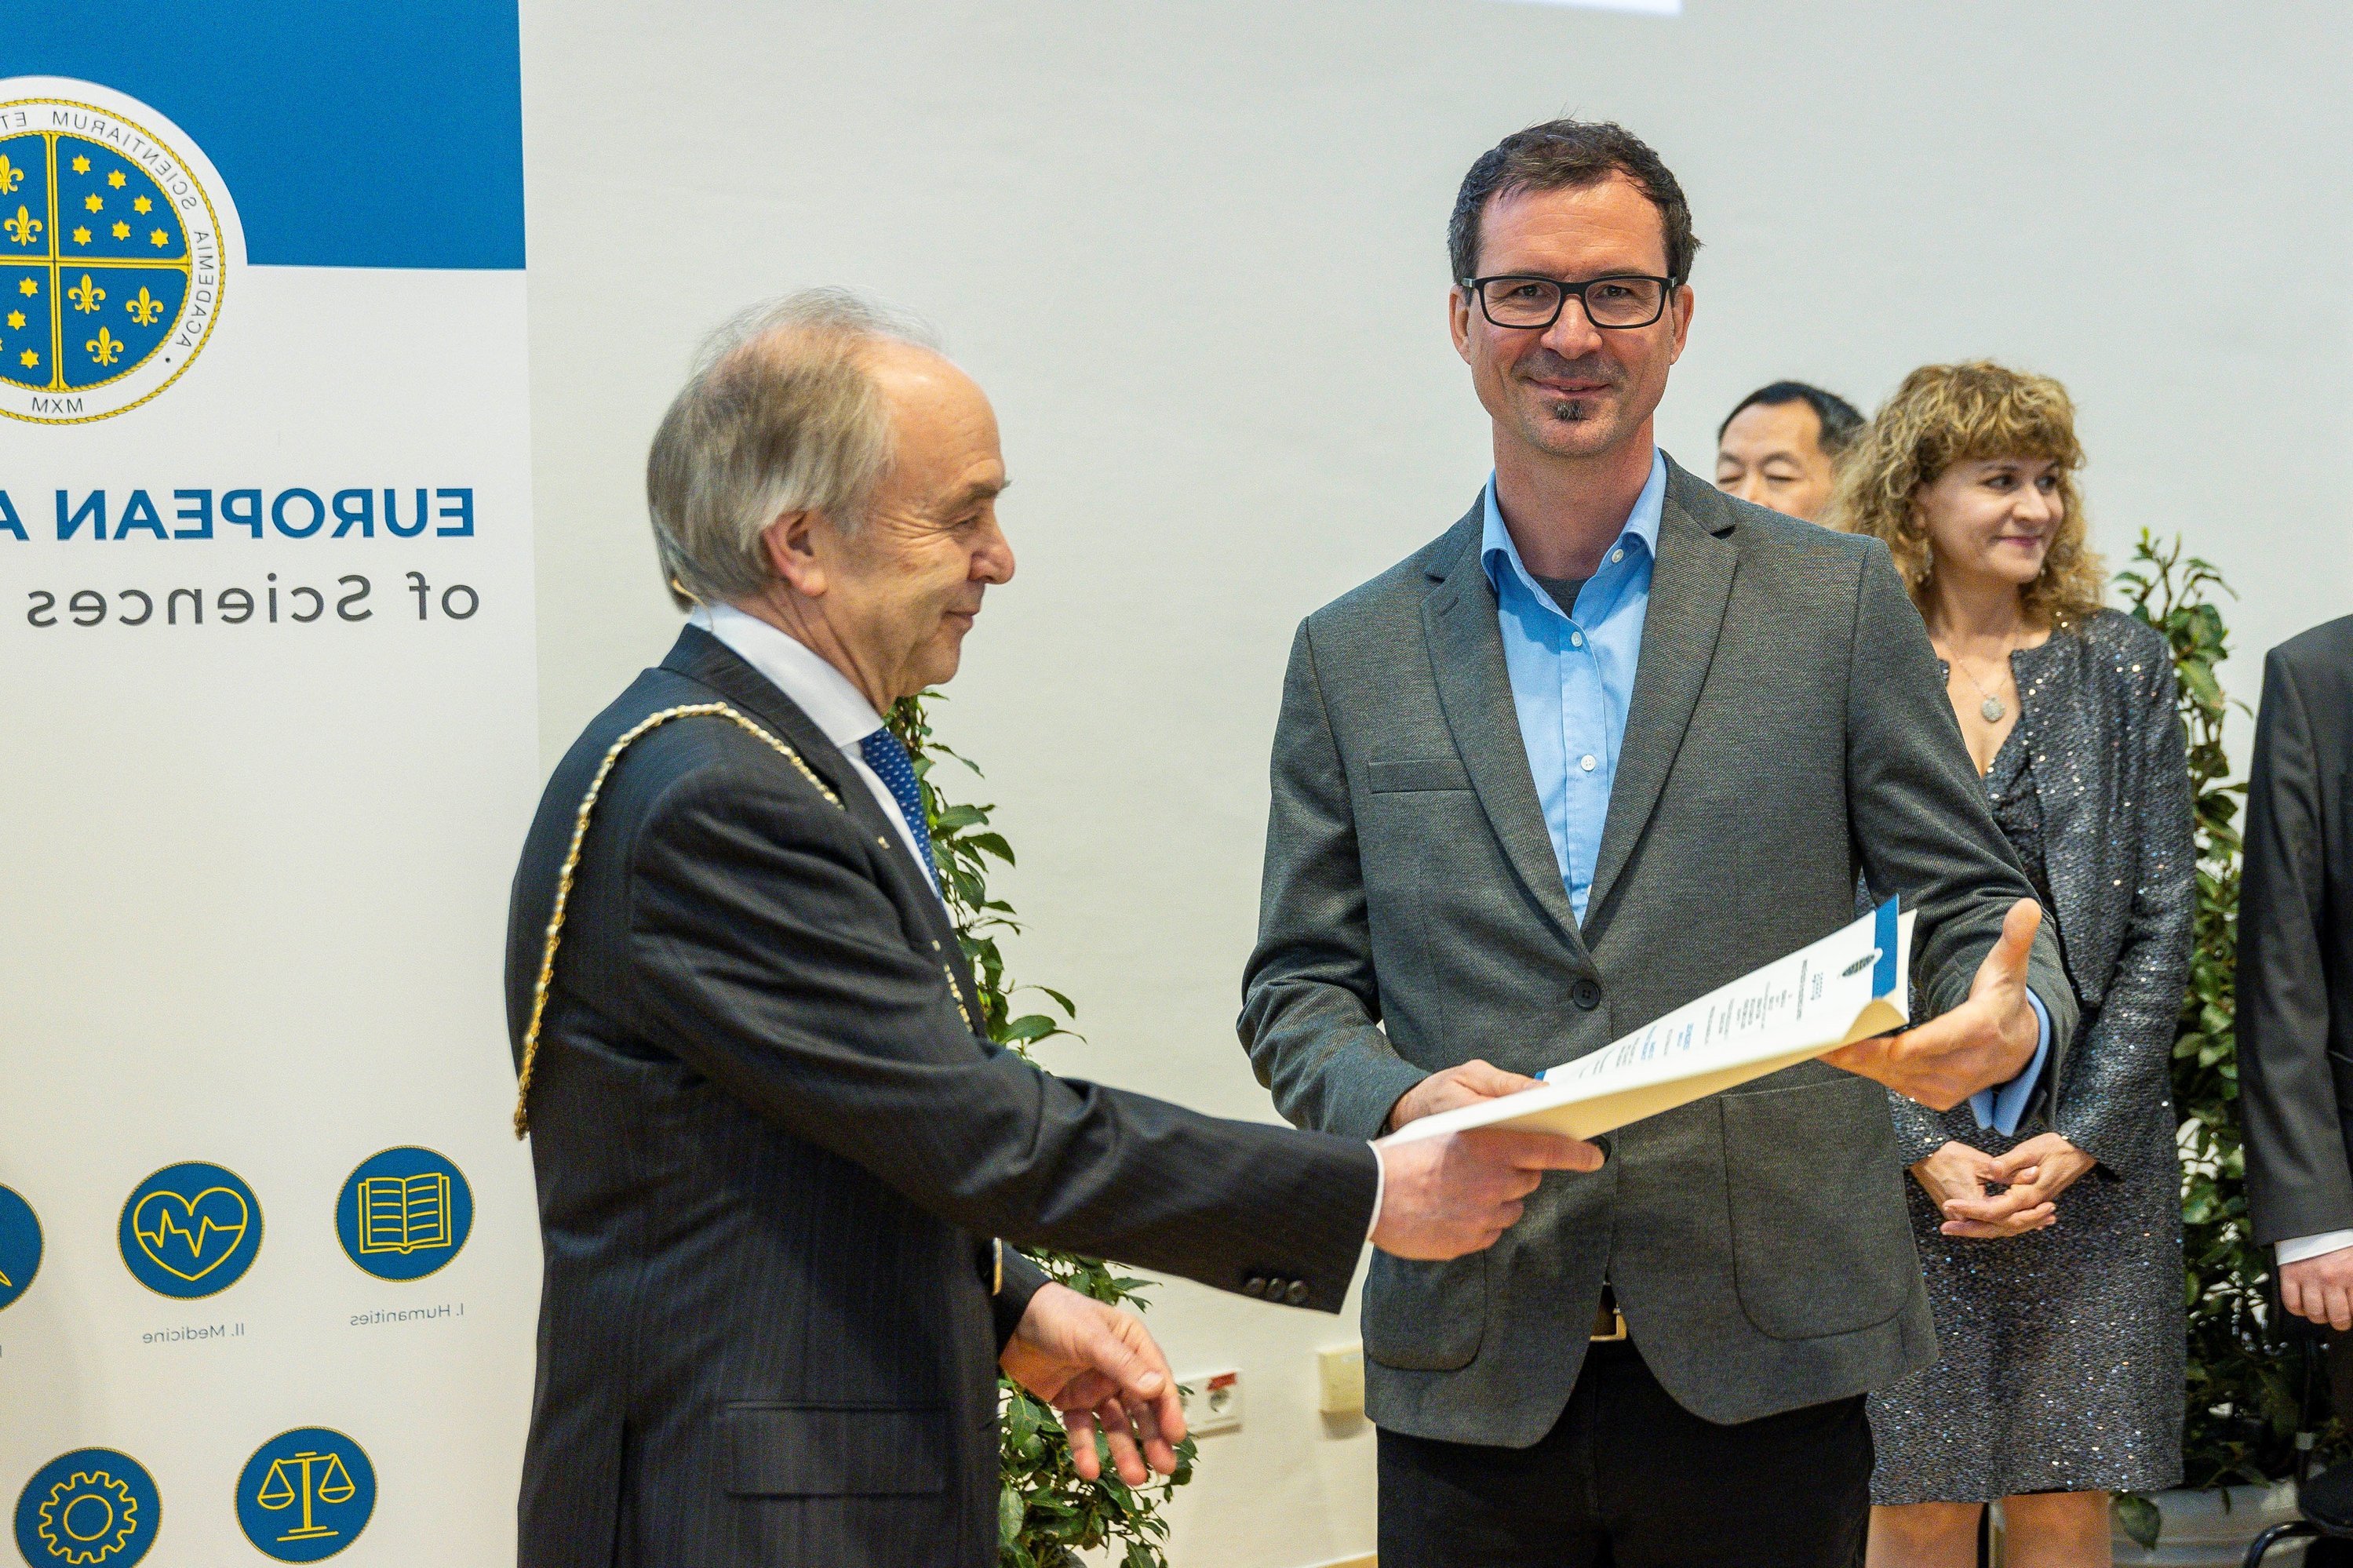 Jürgen Kosel bei der Verleihung seiner Mitgliedschaft bei der European Academy of Science and Technology